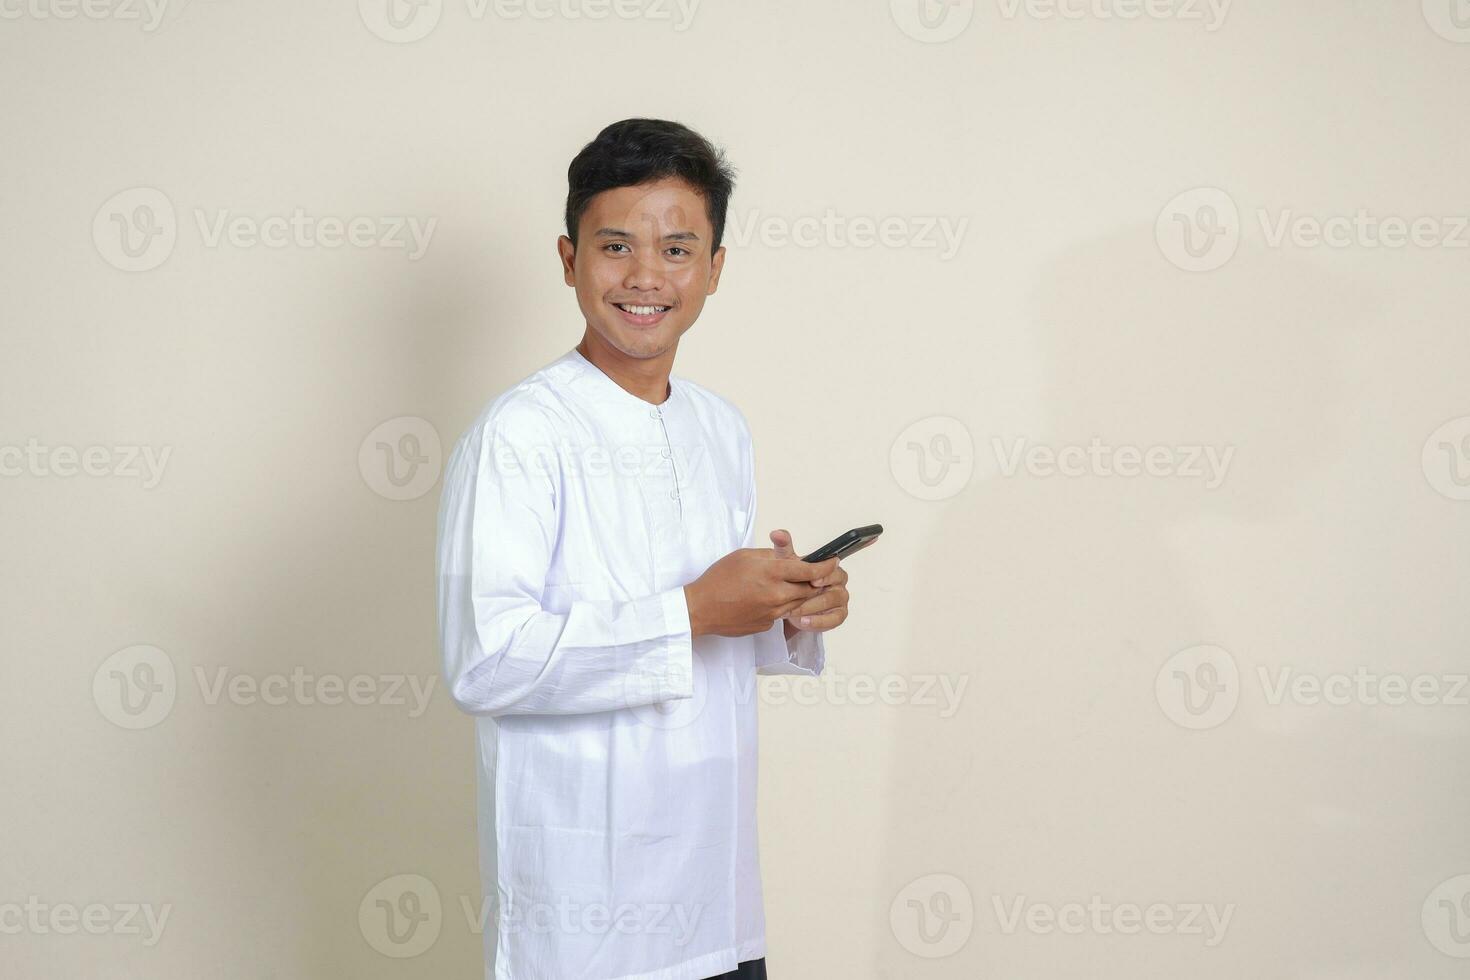 porträtt av attraktiv asiatisk muslim man i vit skjorta innehav mobil telefon med leende uttryck på ansikte. reklam begrepp. isolerat bild på grå foto